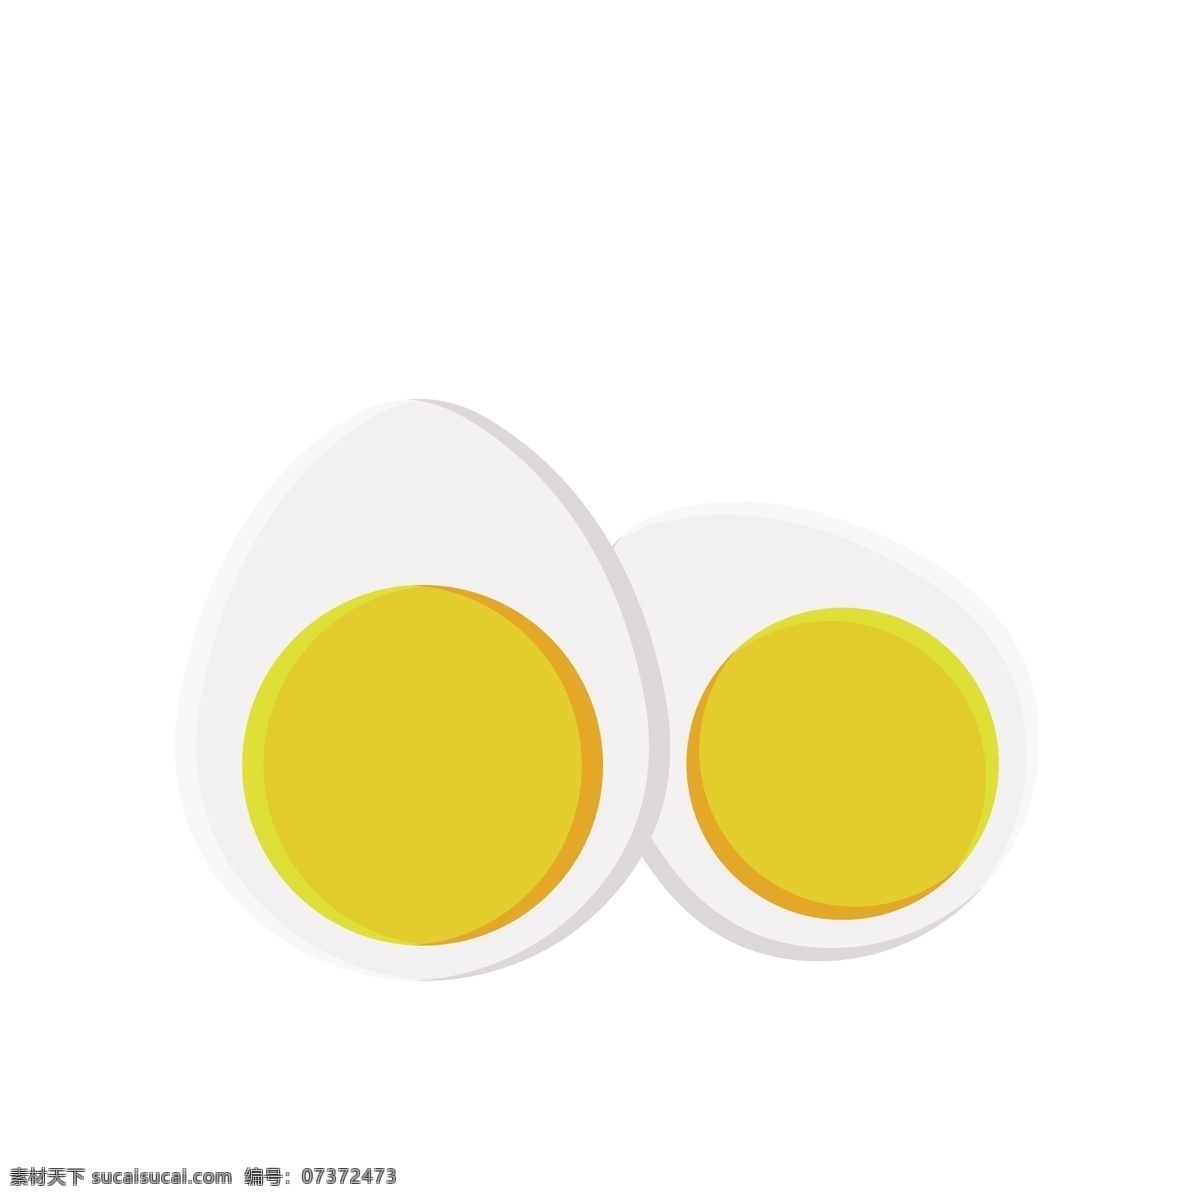 简约 咸鸭蛋 图标 矢量图案 卡通有趣 彩色底纹 鸡蛋 食物